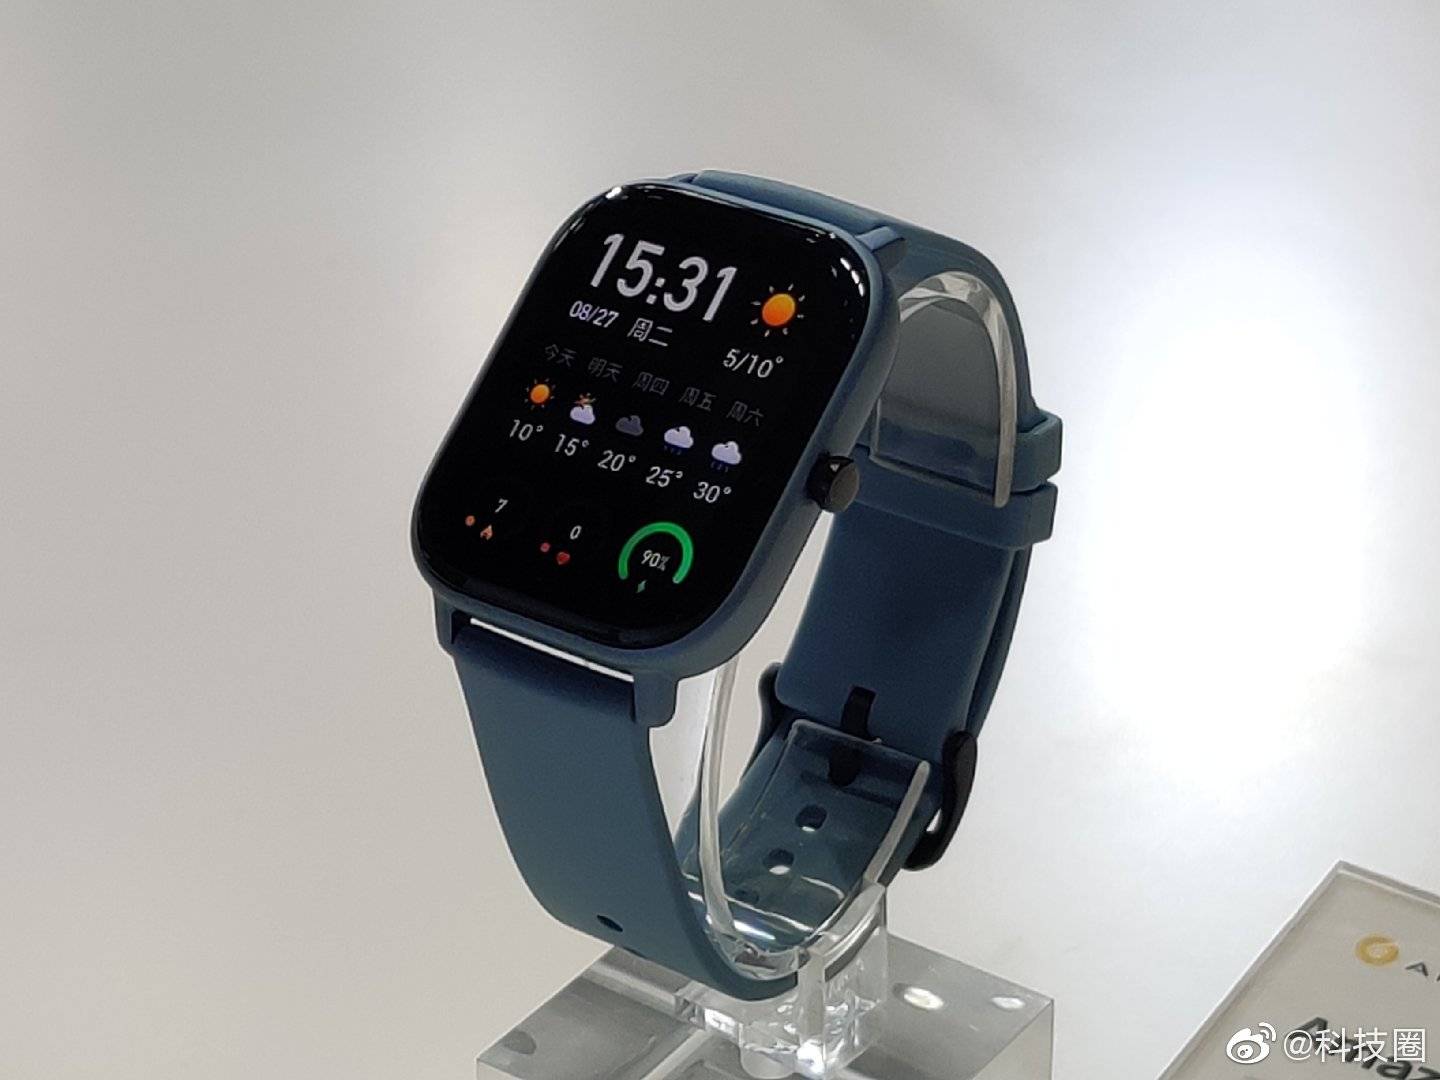 Đối tác của Xiaomi ra
mắt smartwatch Amazfit GTS với thiết kế giống hệt Apple
Watch Series 4, giá chỉ bằng 1/3